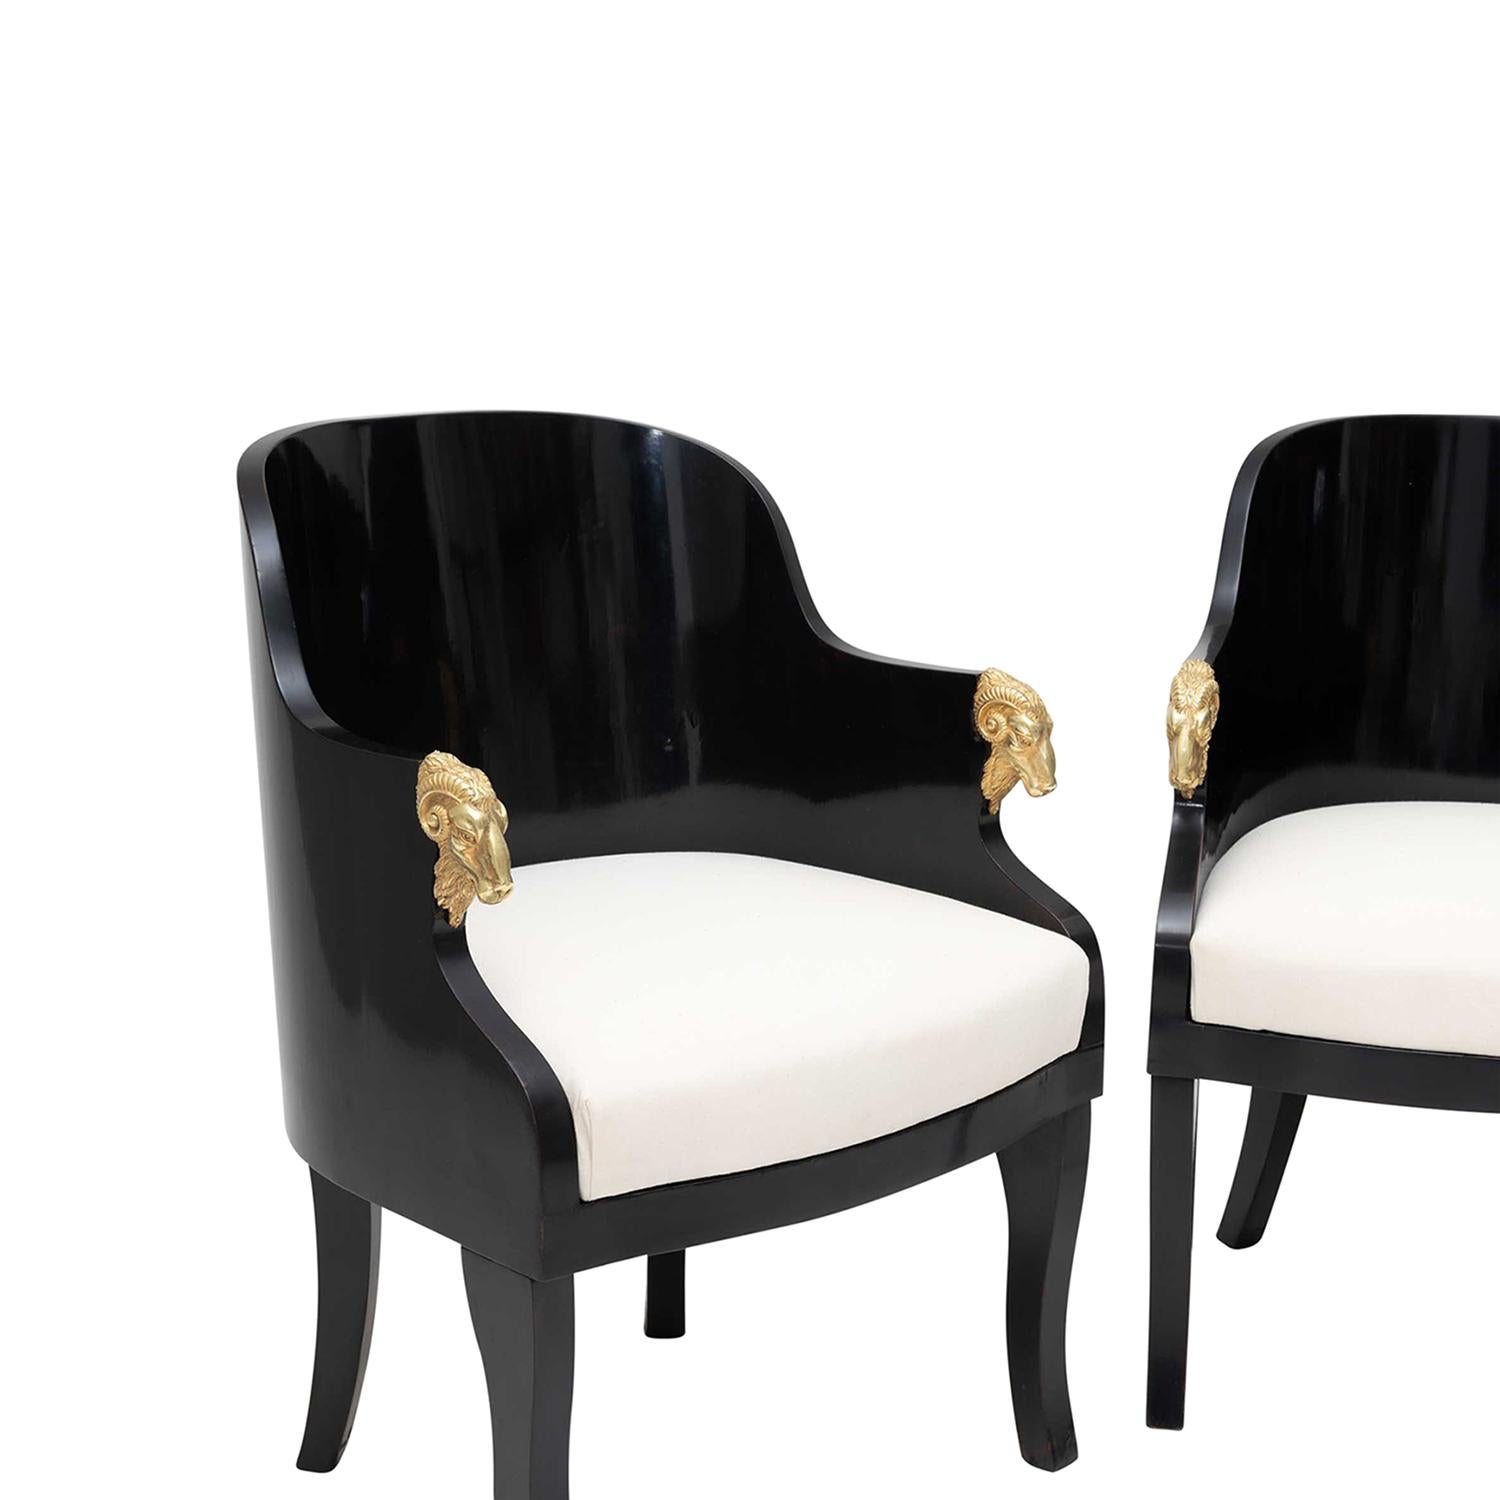 Ein antikes baltisches Paar schwarzer Sessel des 19. Jahrhunderts aus handgefertigtem, lackiertem Birkenholz, in gutem Zustand. Die kleinen, detaillierten Sessel haben eine abgerundete Rückenlehne mit schlanken Armlehnen, die durch vergoldete